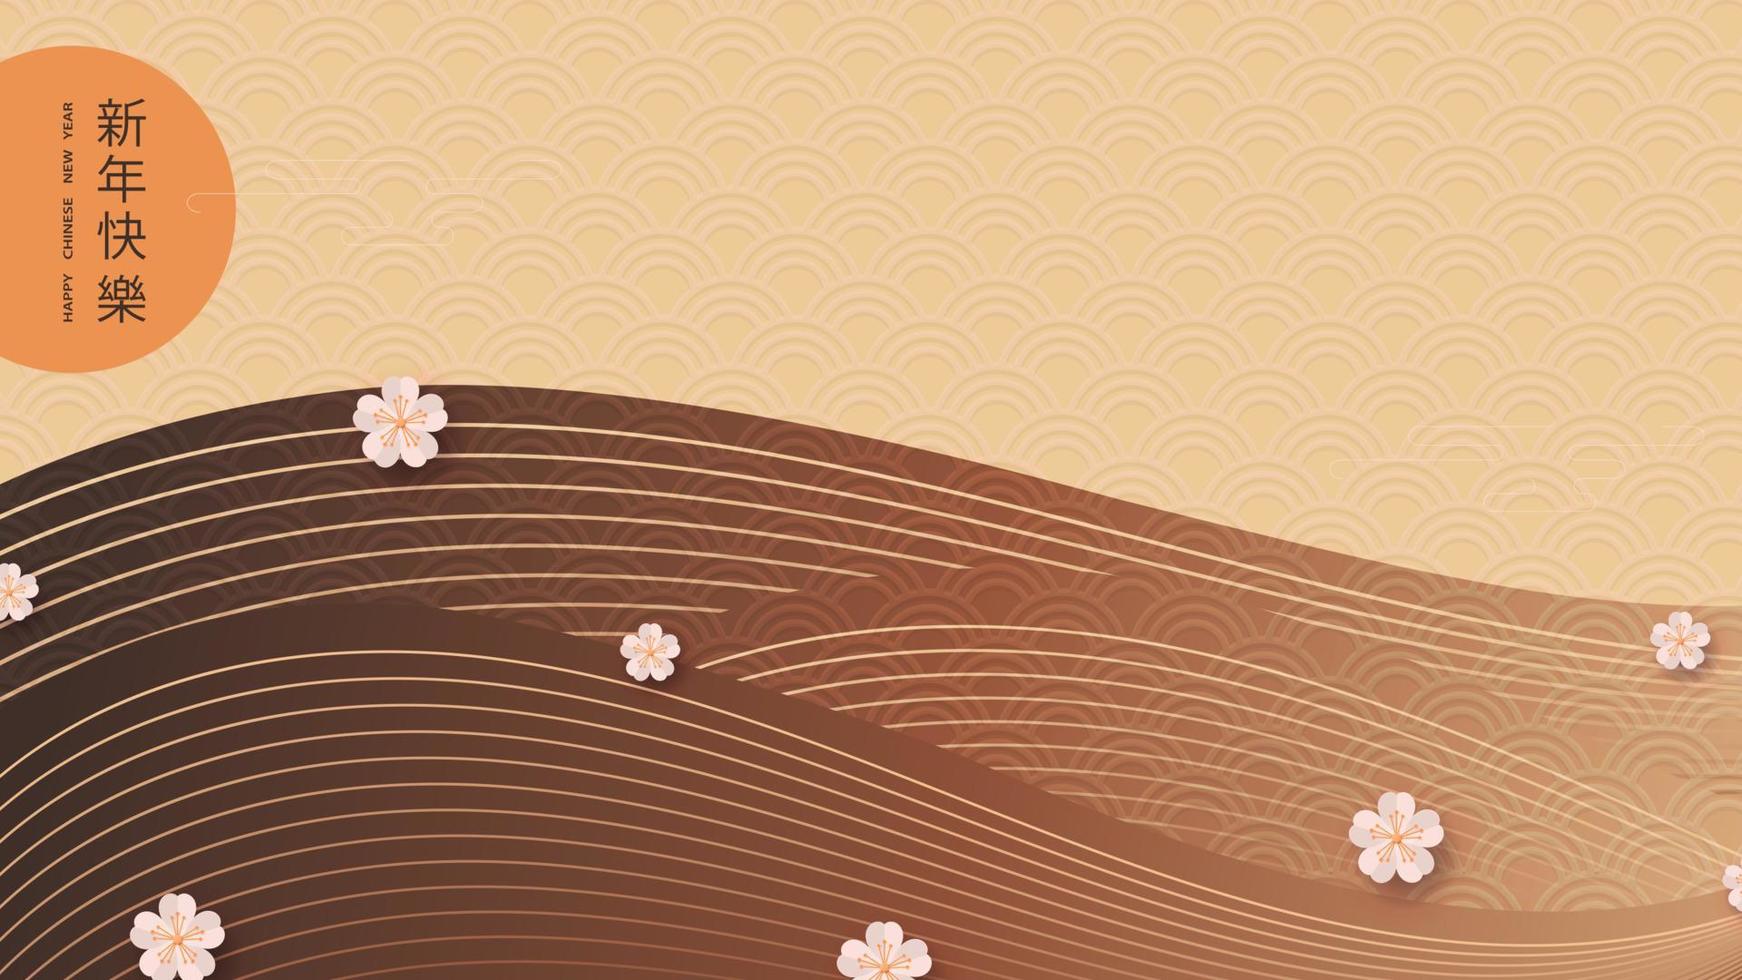 contento nuovo Cinese anno. stilizzato carta con sakura fiori e montagna design nel orientale stile. traduzione a partire dal Cinese - contento nuovo anno. vettore illustrazione